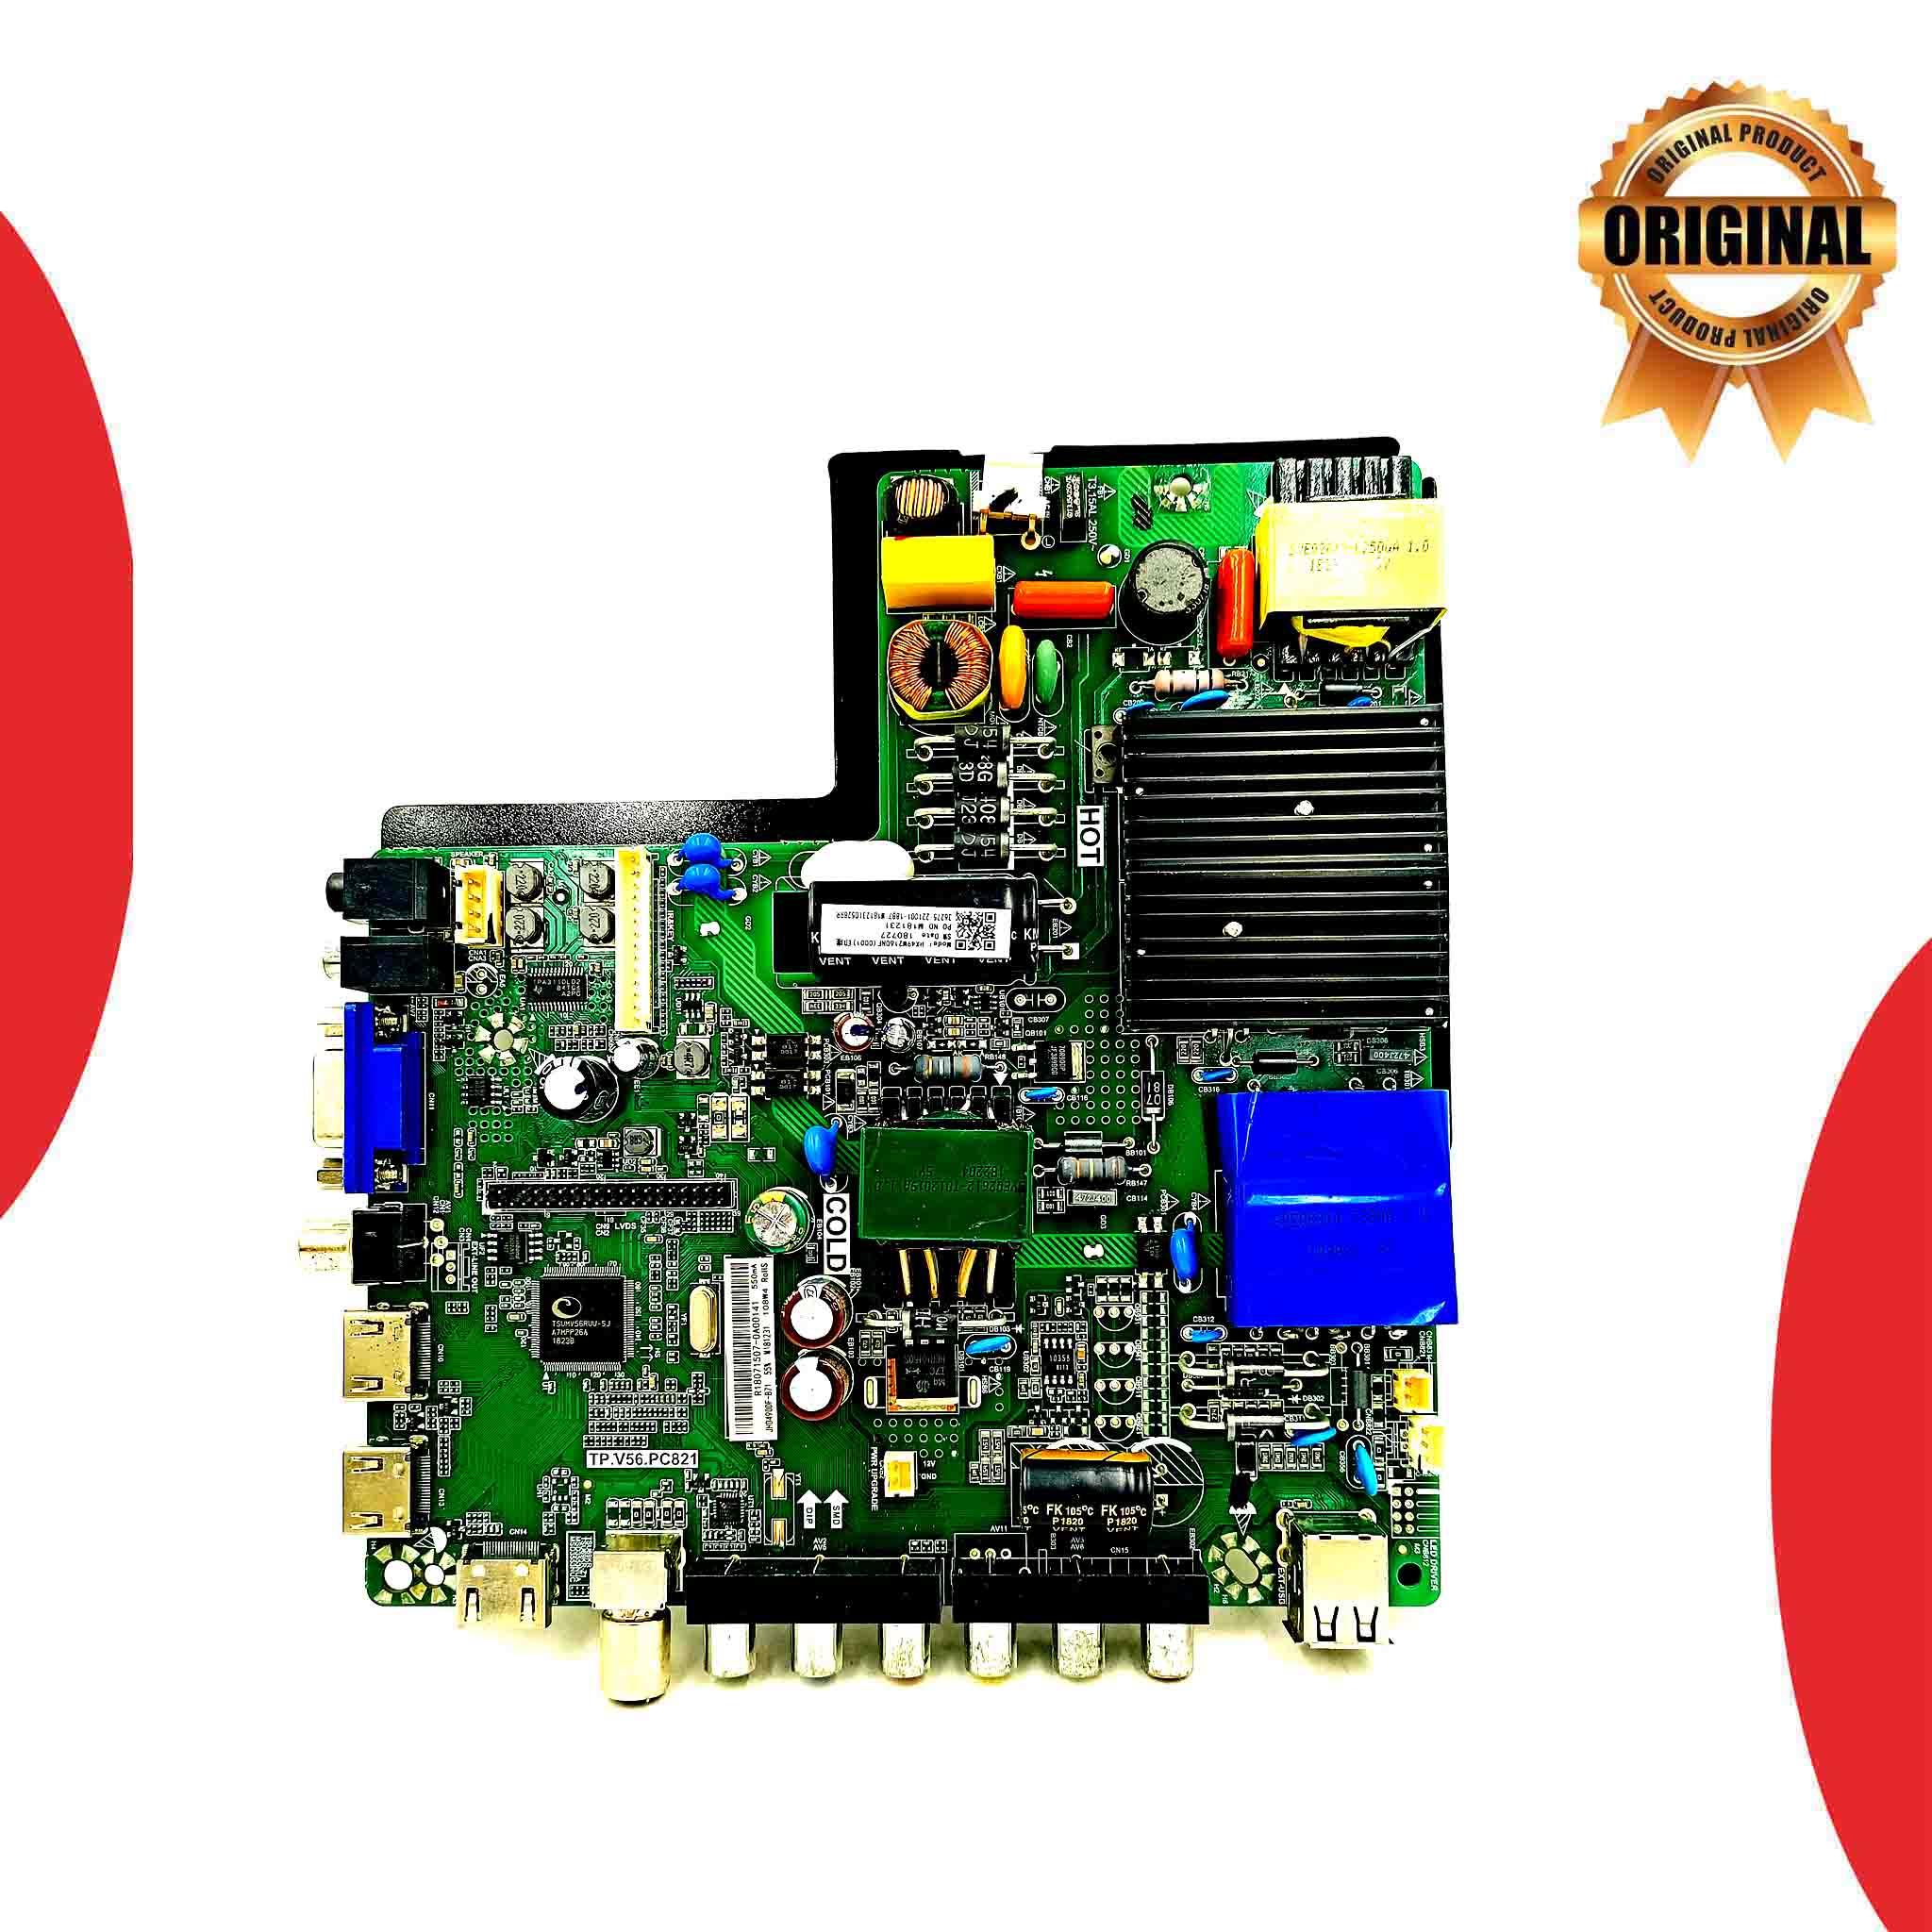 Model 49D6575 Board Number TP V56 PC821 VU LED TV Motherboard - Great Bharat Electronics